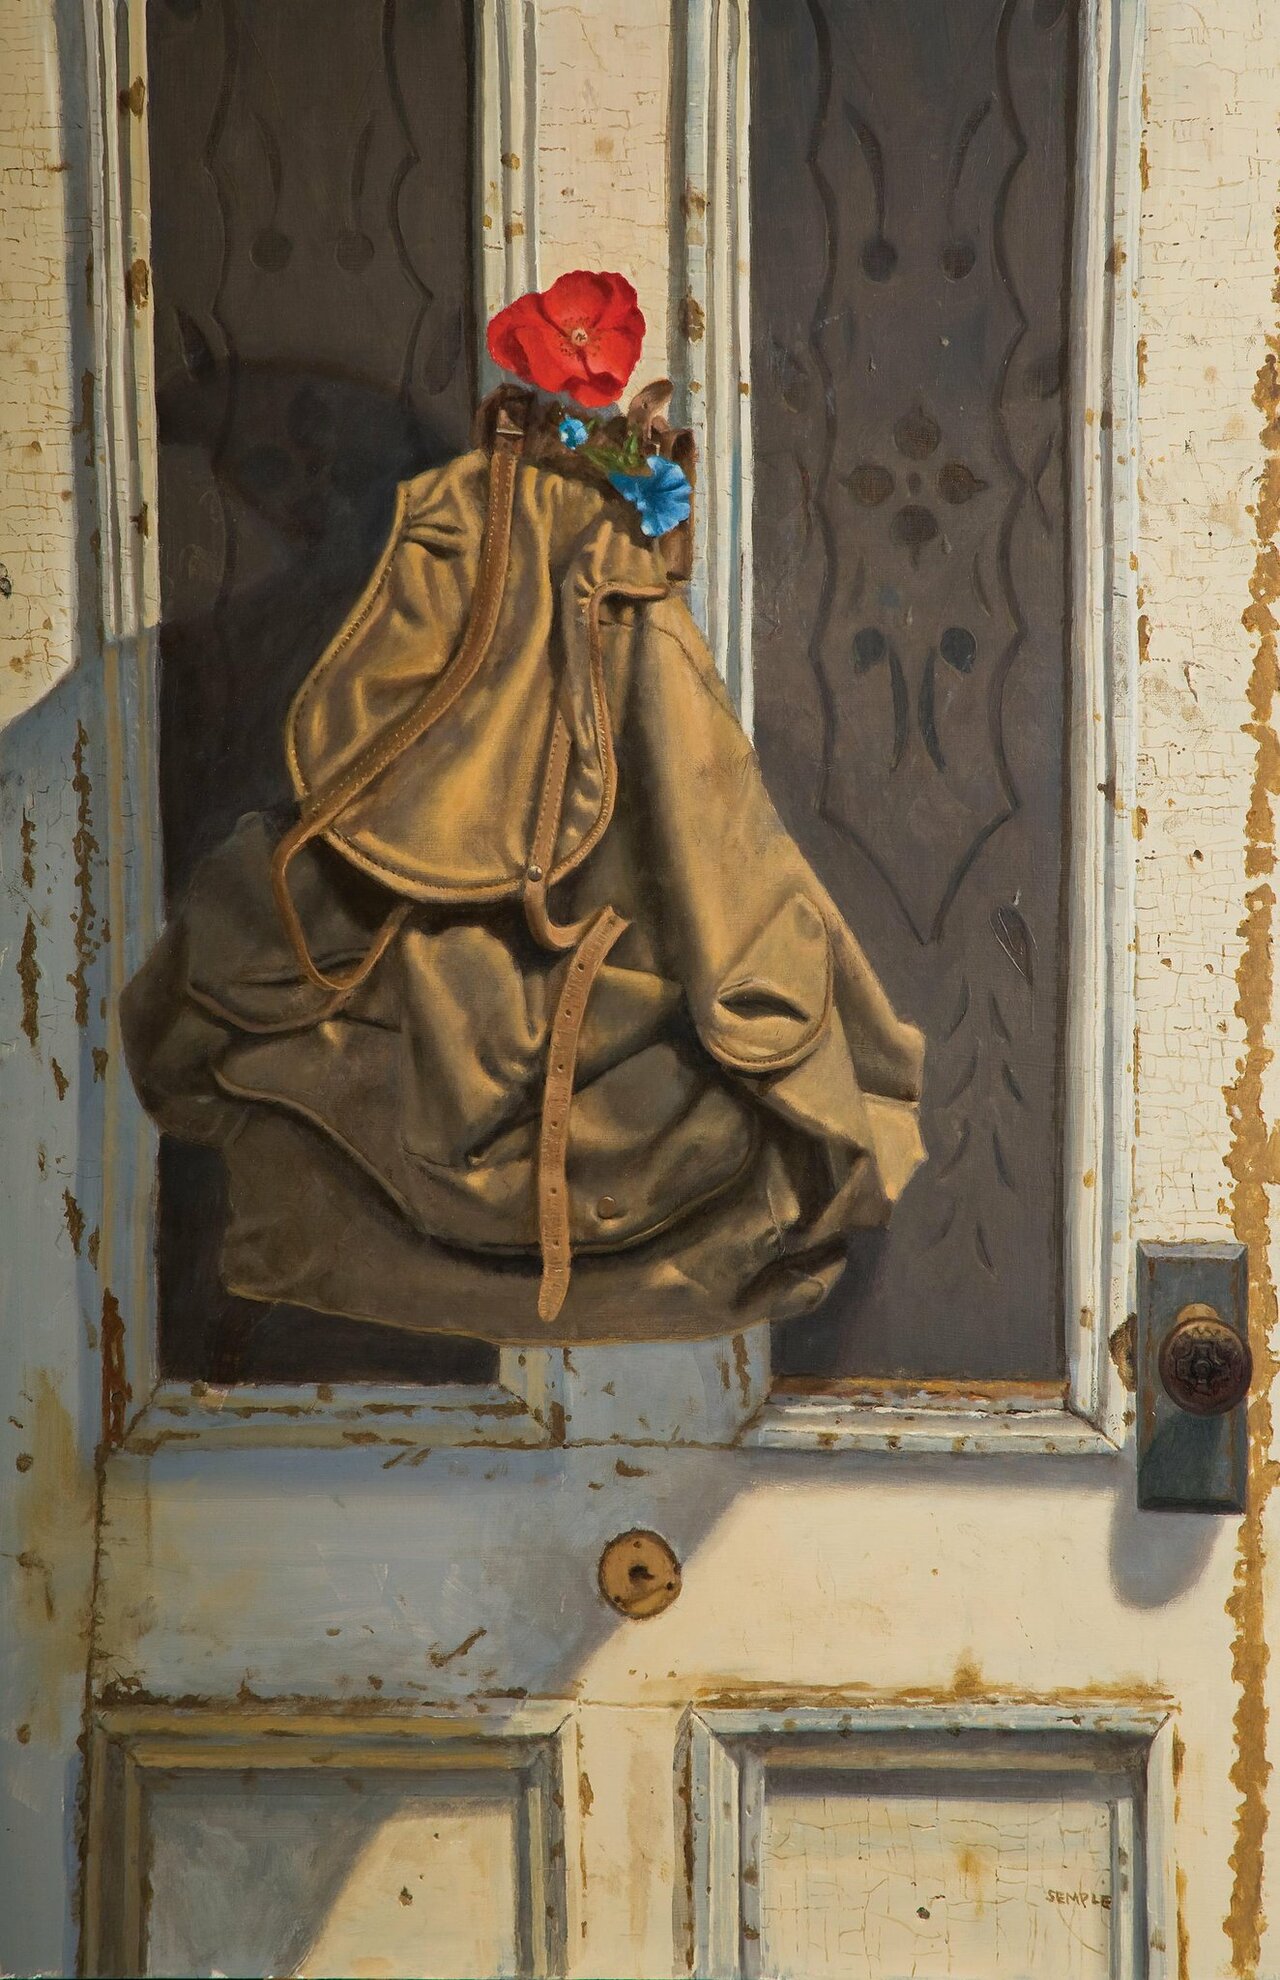 Mallory's Knapsack #Oilonpanel, 2010 #Art #OilPainting #StillLife #Artist http://t.co/kvDvzOuGV4